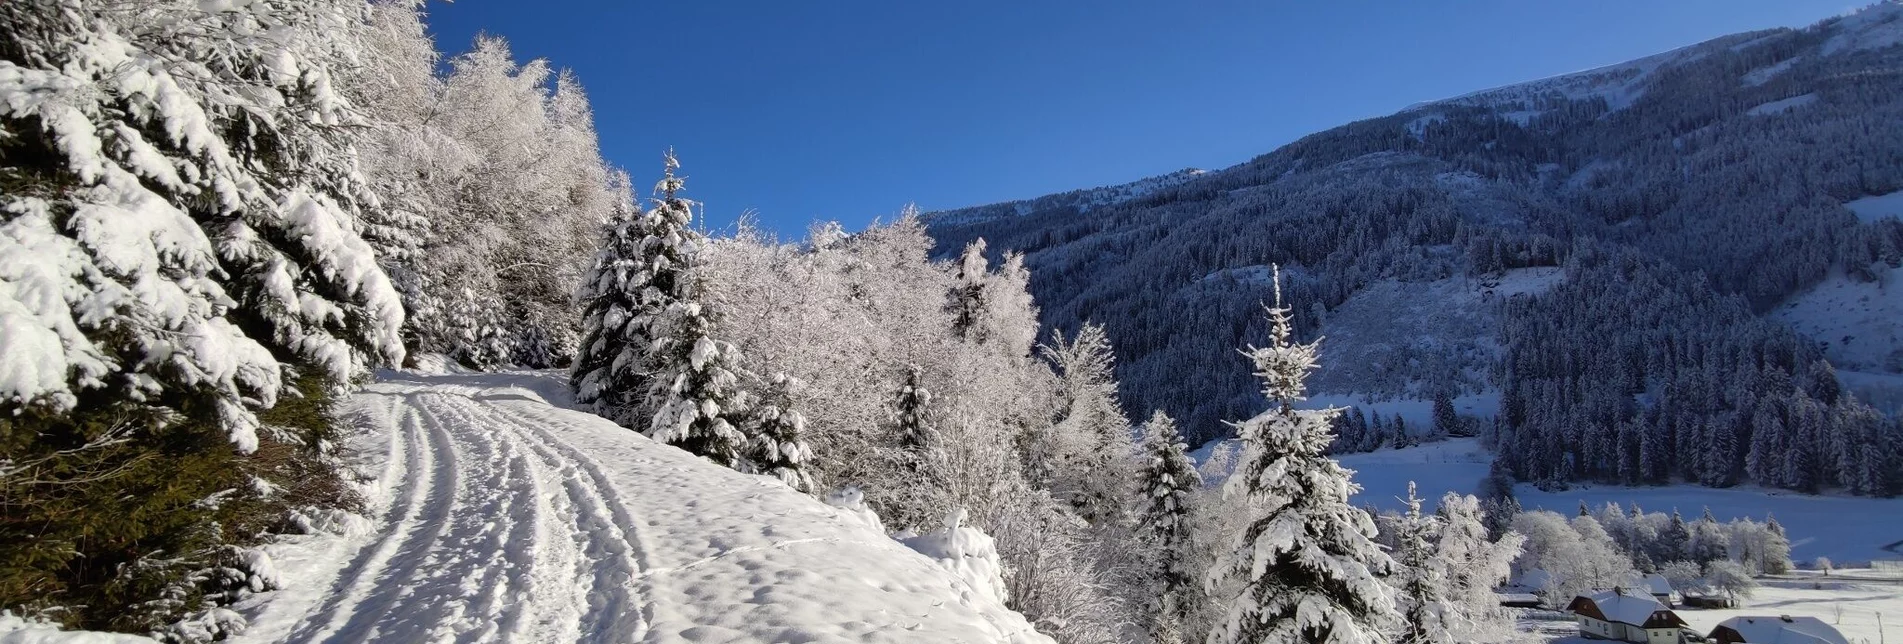 Winterwandern Winterwanderung Vorderwald Runde - Touren-Impression #1 | © Erlebnisregion Schladming-Dachstein